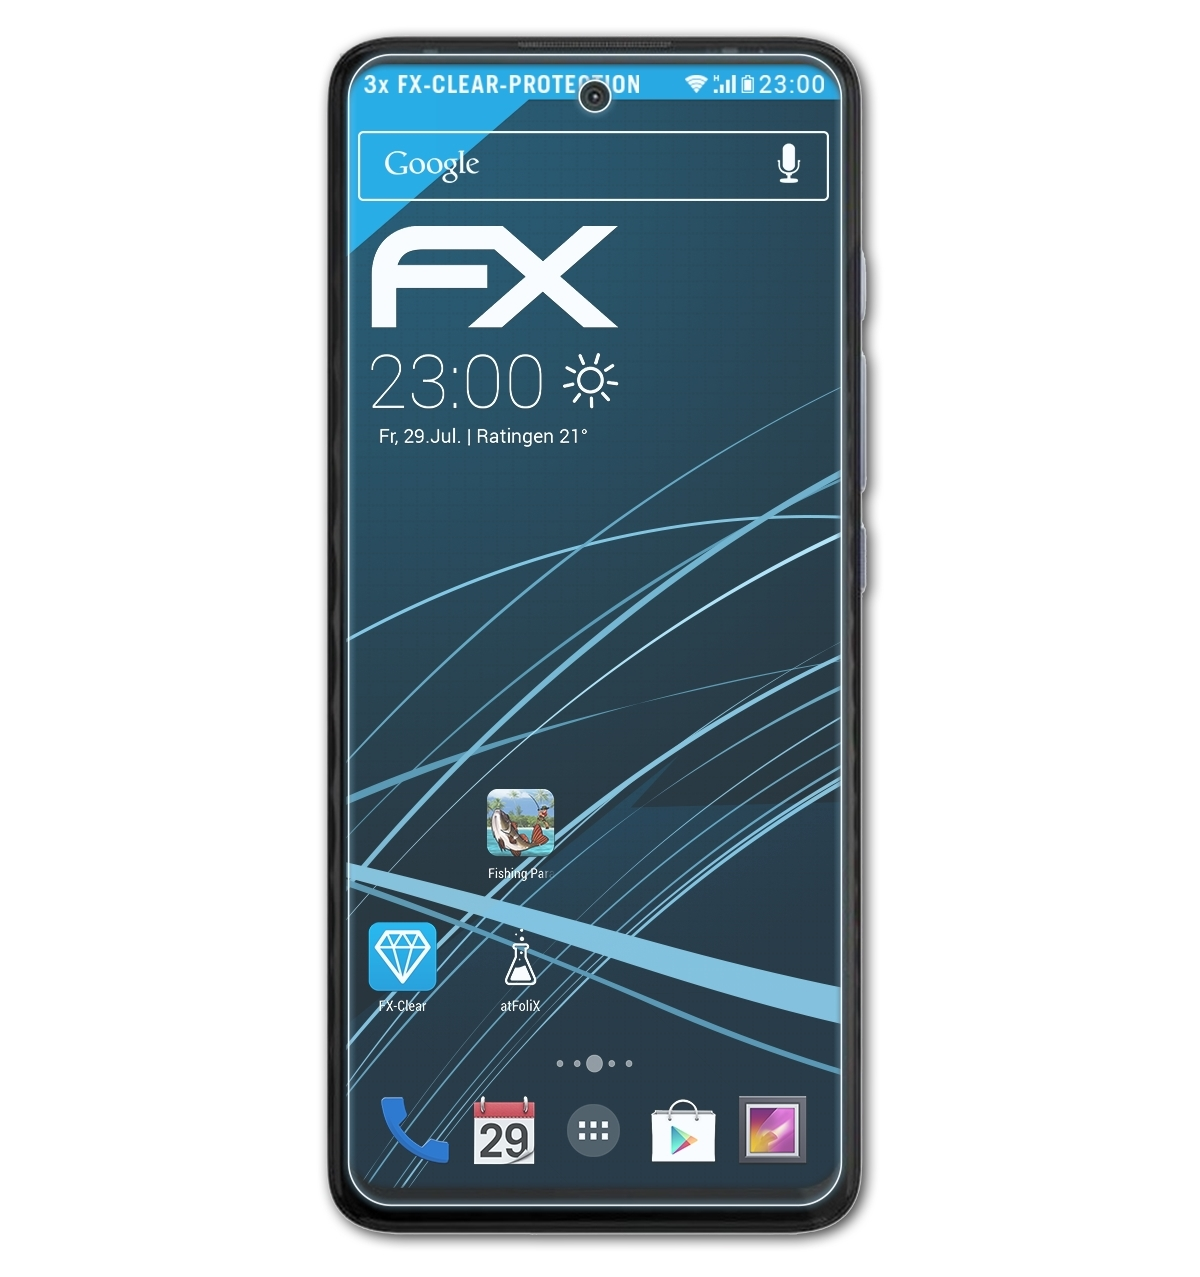 Displayschutz(für FX-Clear G40 Moto Fusion) Motorola ATFOLIX 3x